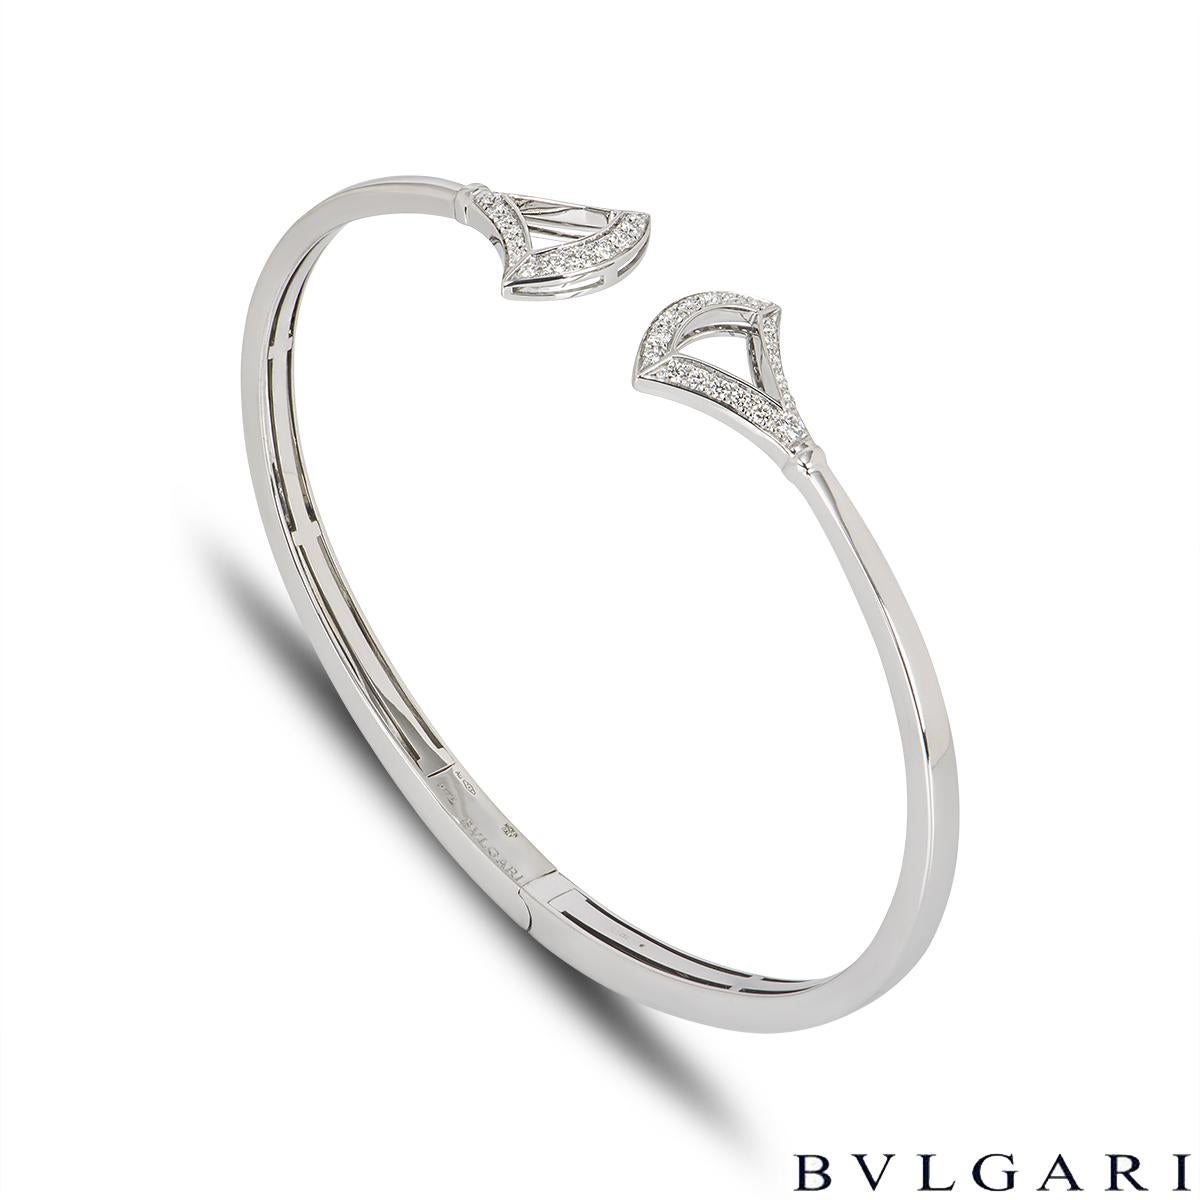 Un élégant bracelet en diamants Bvlgari en or blanc 18 carats de la collection Divas' Dream. Le bracelet de style manchette présente un motif en éventail avec 18 diamants ronds de taille brillant à chaque extrémité, pour un total d'environ 0,42 ct.